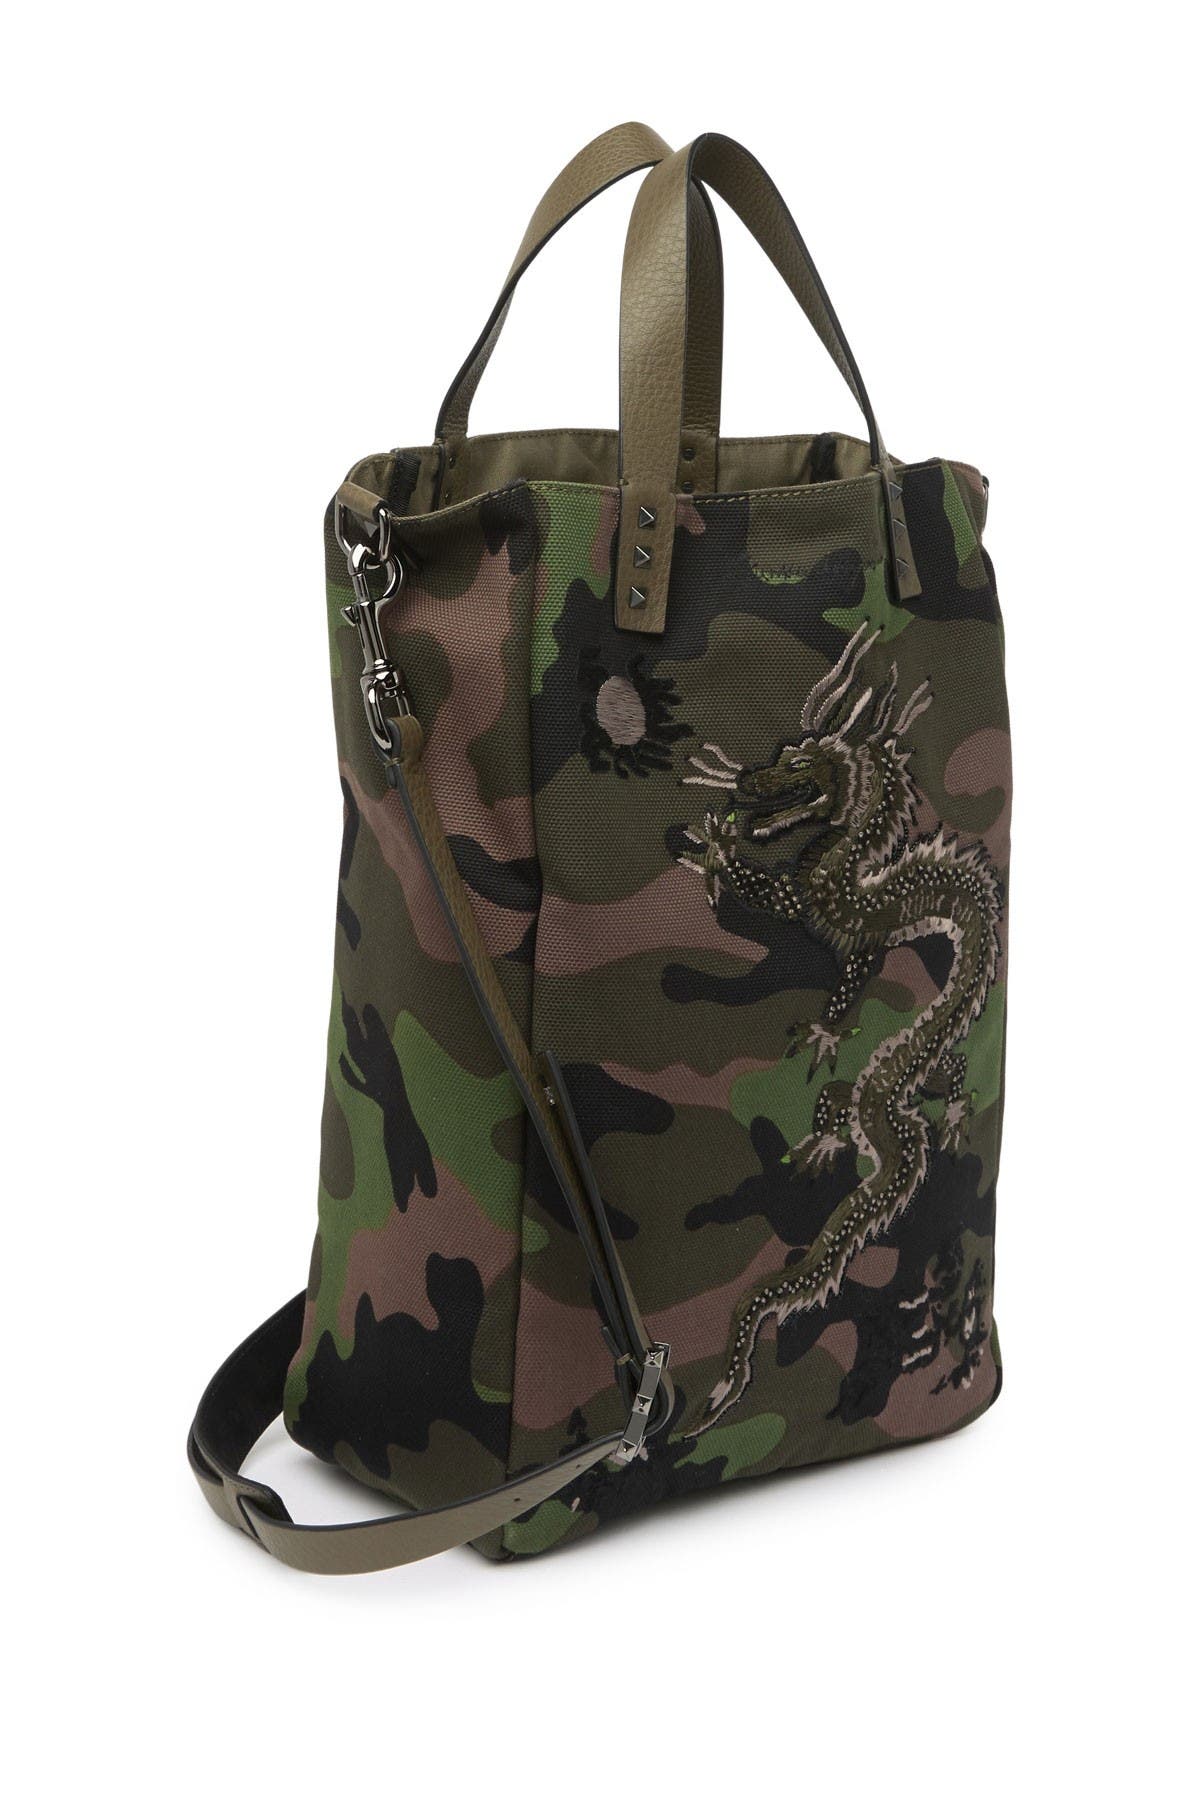 Valentino Garavani Dragon Embroidered Camo Crossbody Tote Bag In Army Green